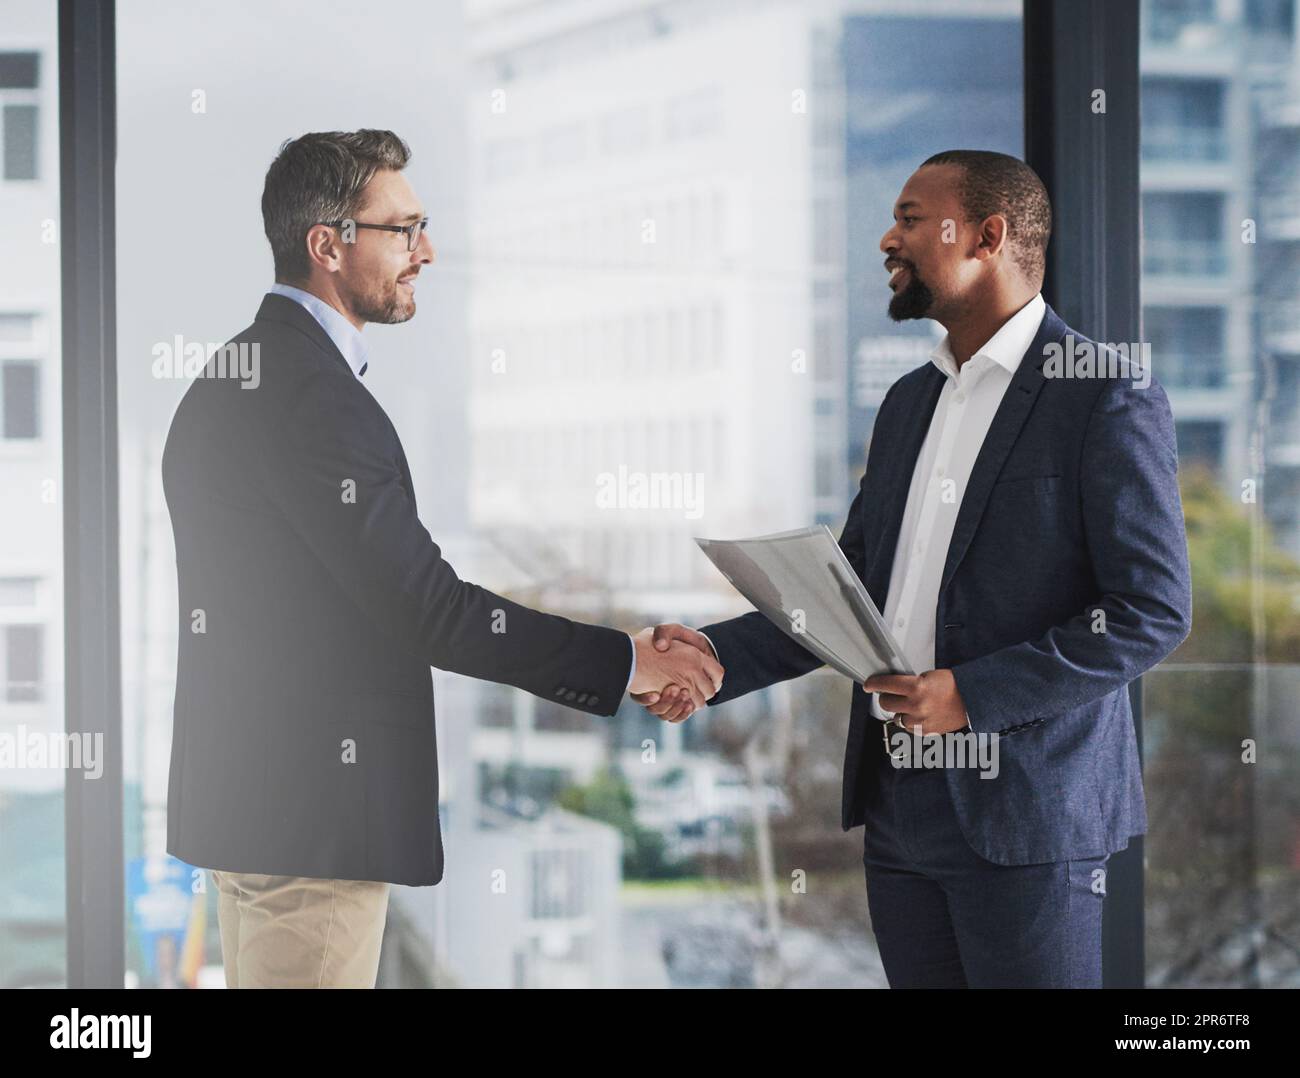 Um der Beste zu sein, gehen Sie Partnerschaften mit den Besten ein. Aufnahme von zwei Geschäftsleuten, die bei der Arbeit die Hände schüttelten. Stockfoto